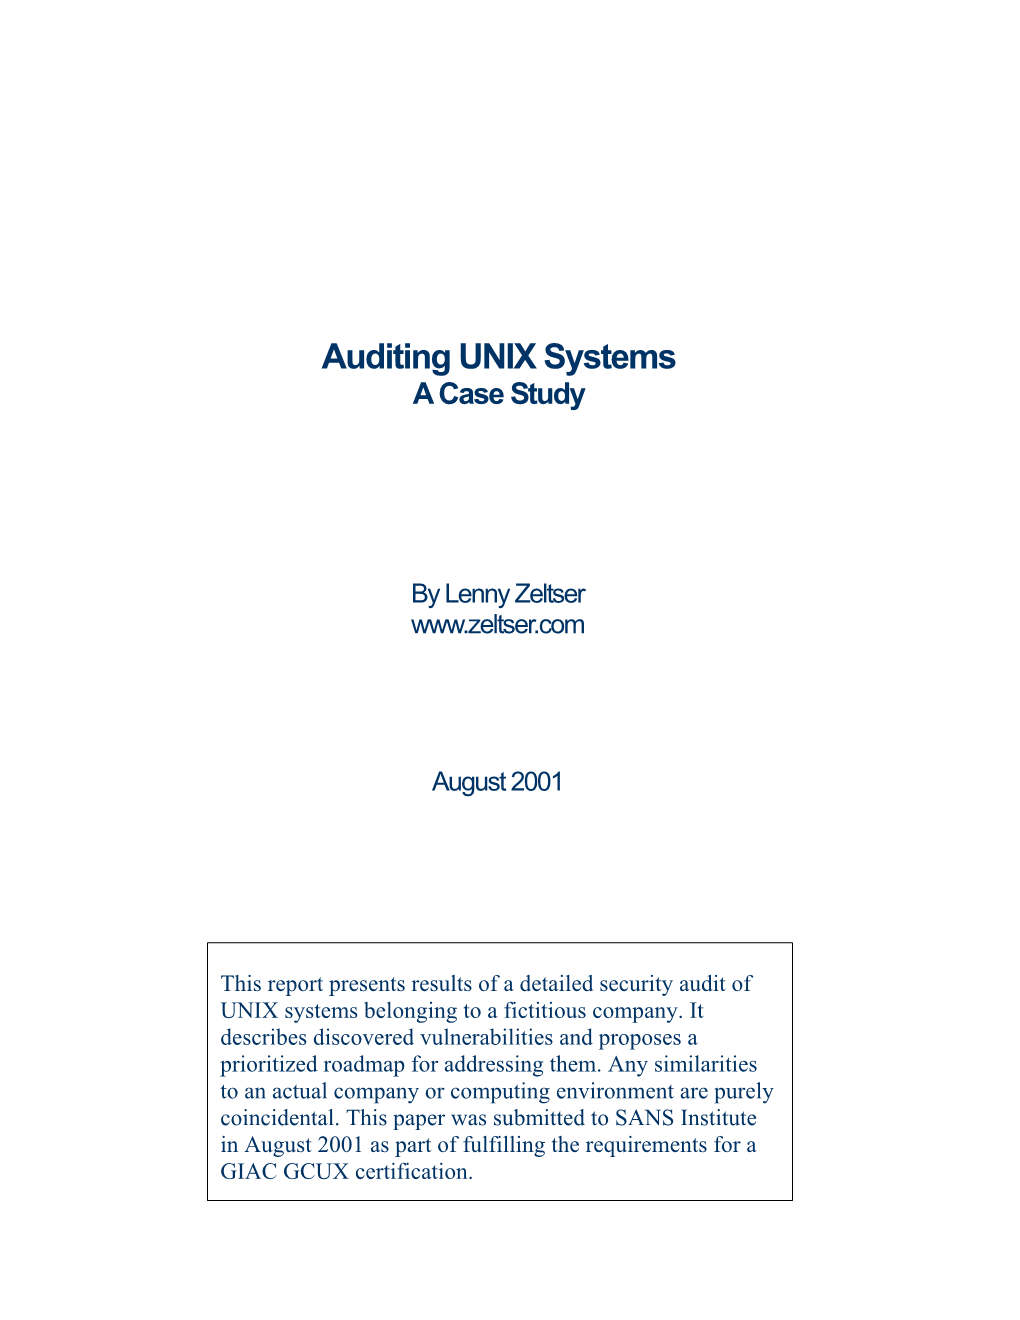 UNIX Security Audit: a Case Study